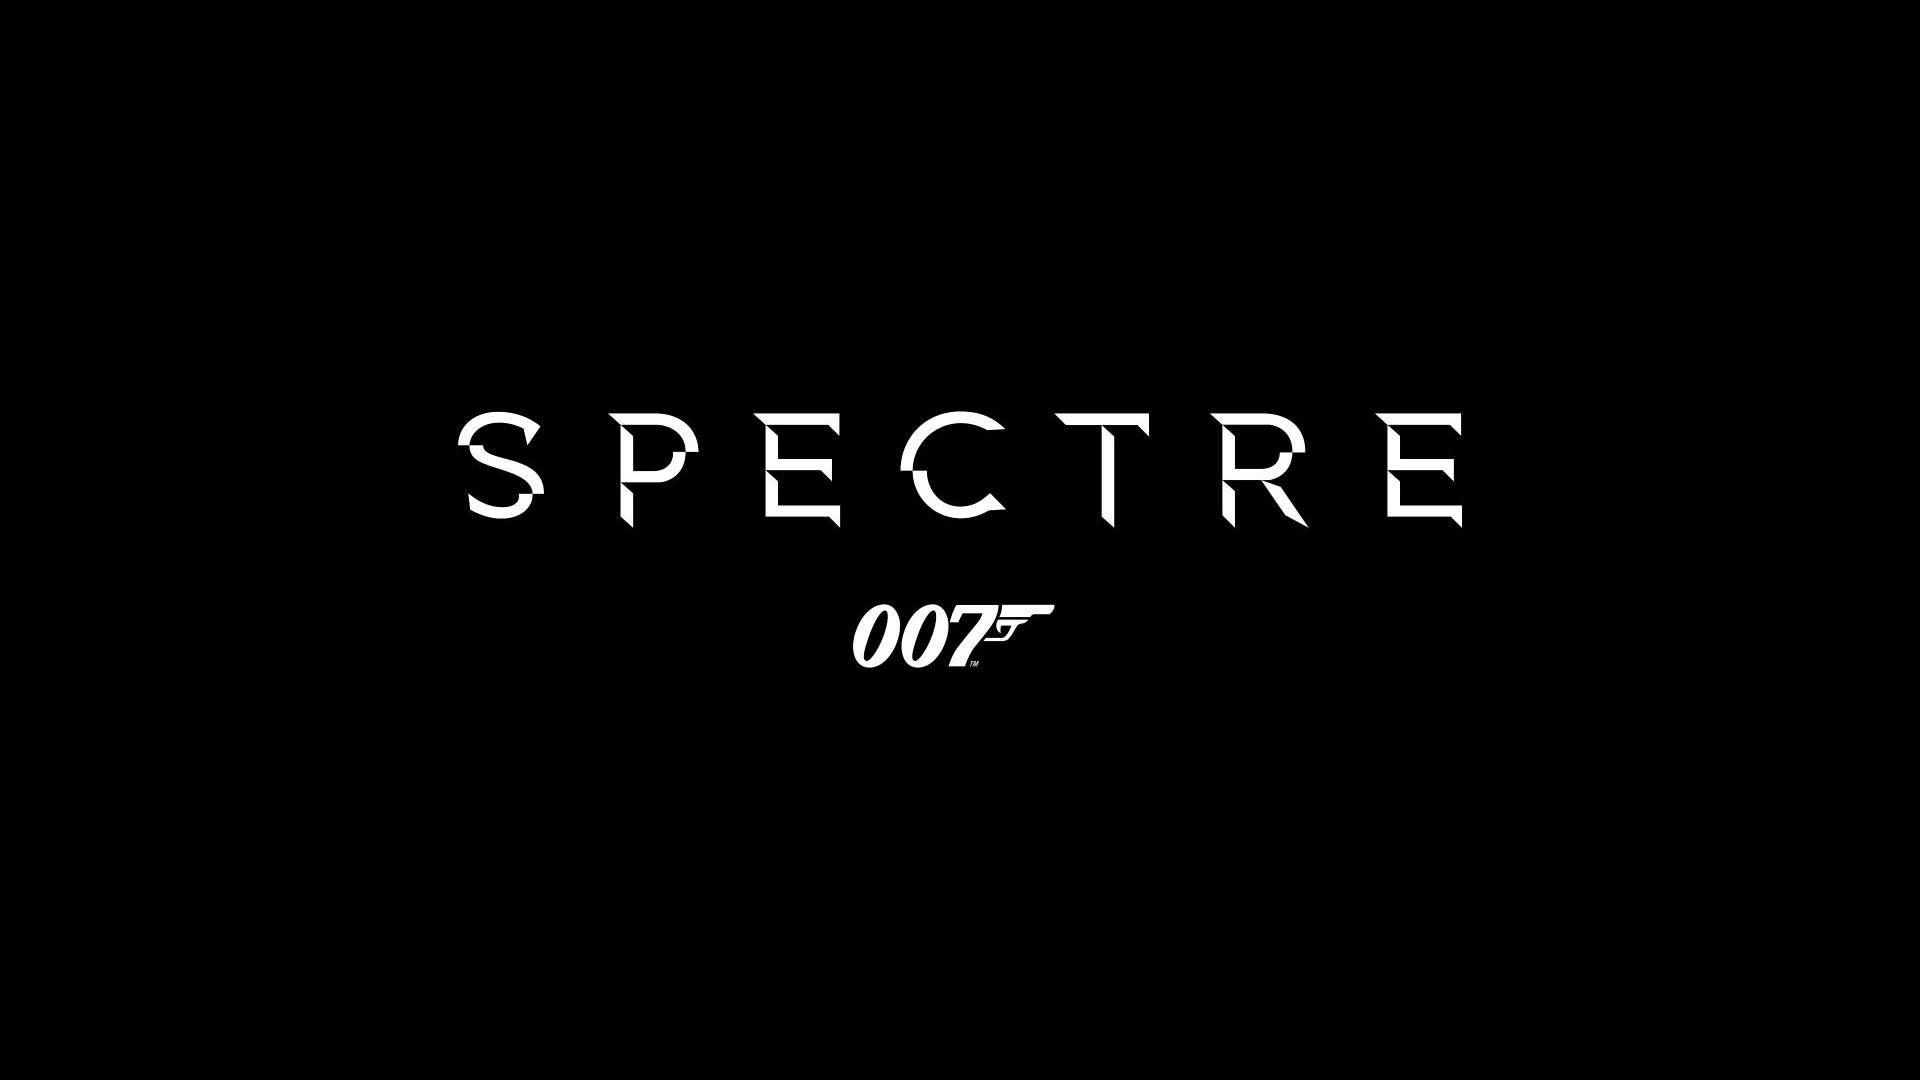 James Bond: Spectre Wallpaper, Picture, Image